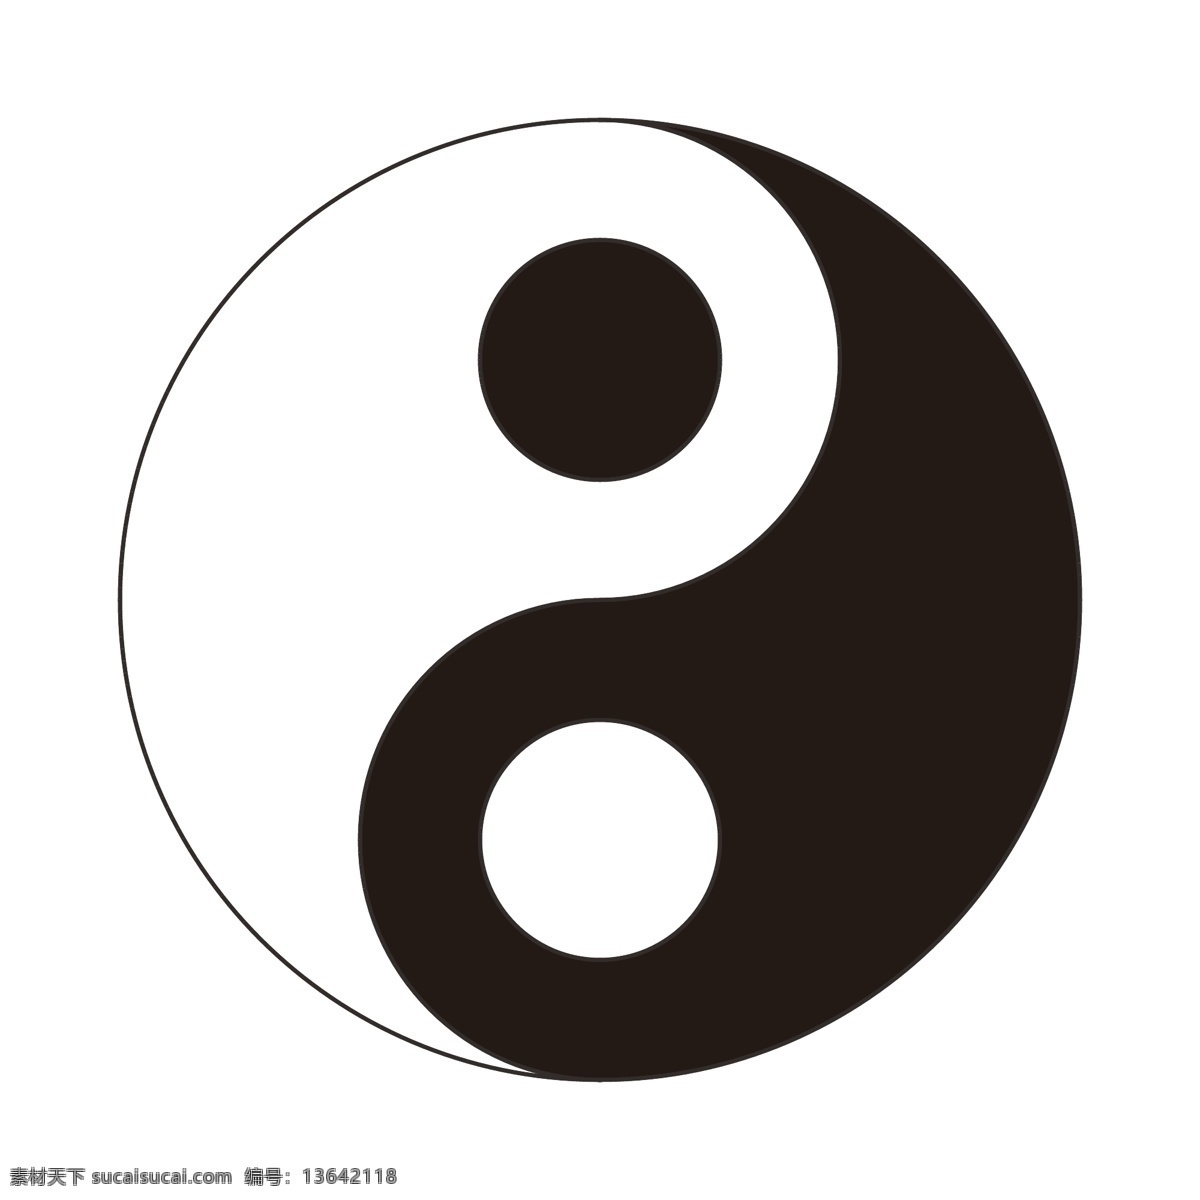 矢量 太极图 太极 阴阳 八卦 logo logo设计